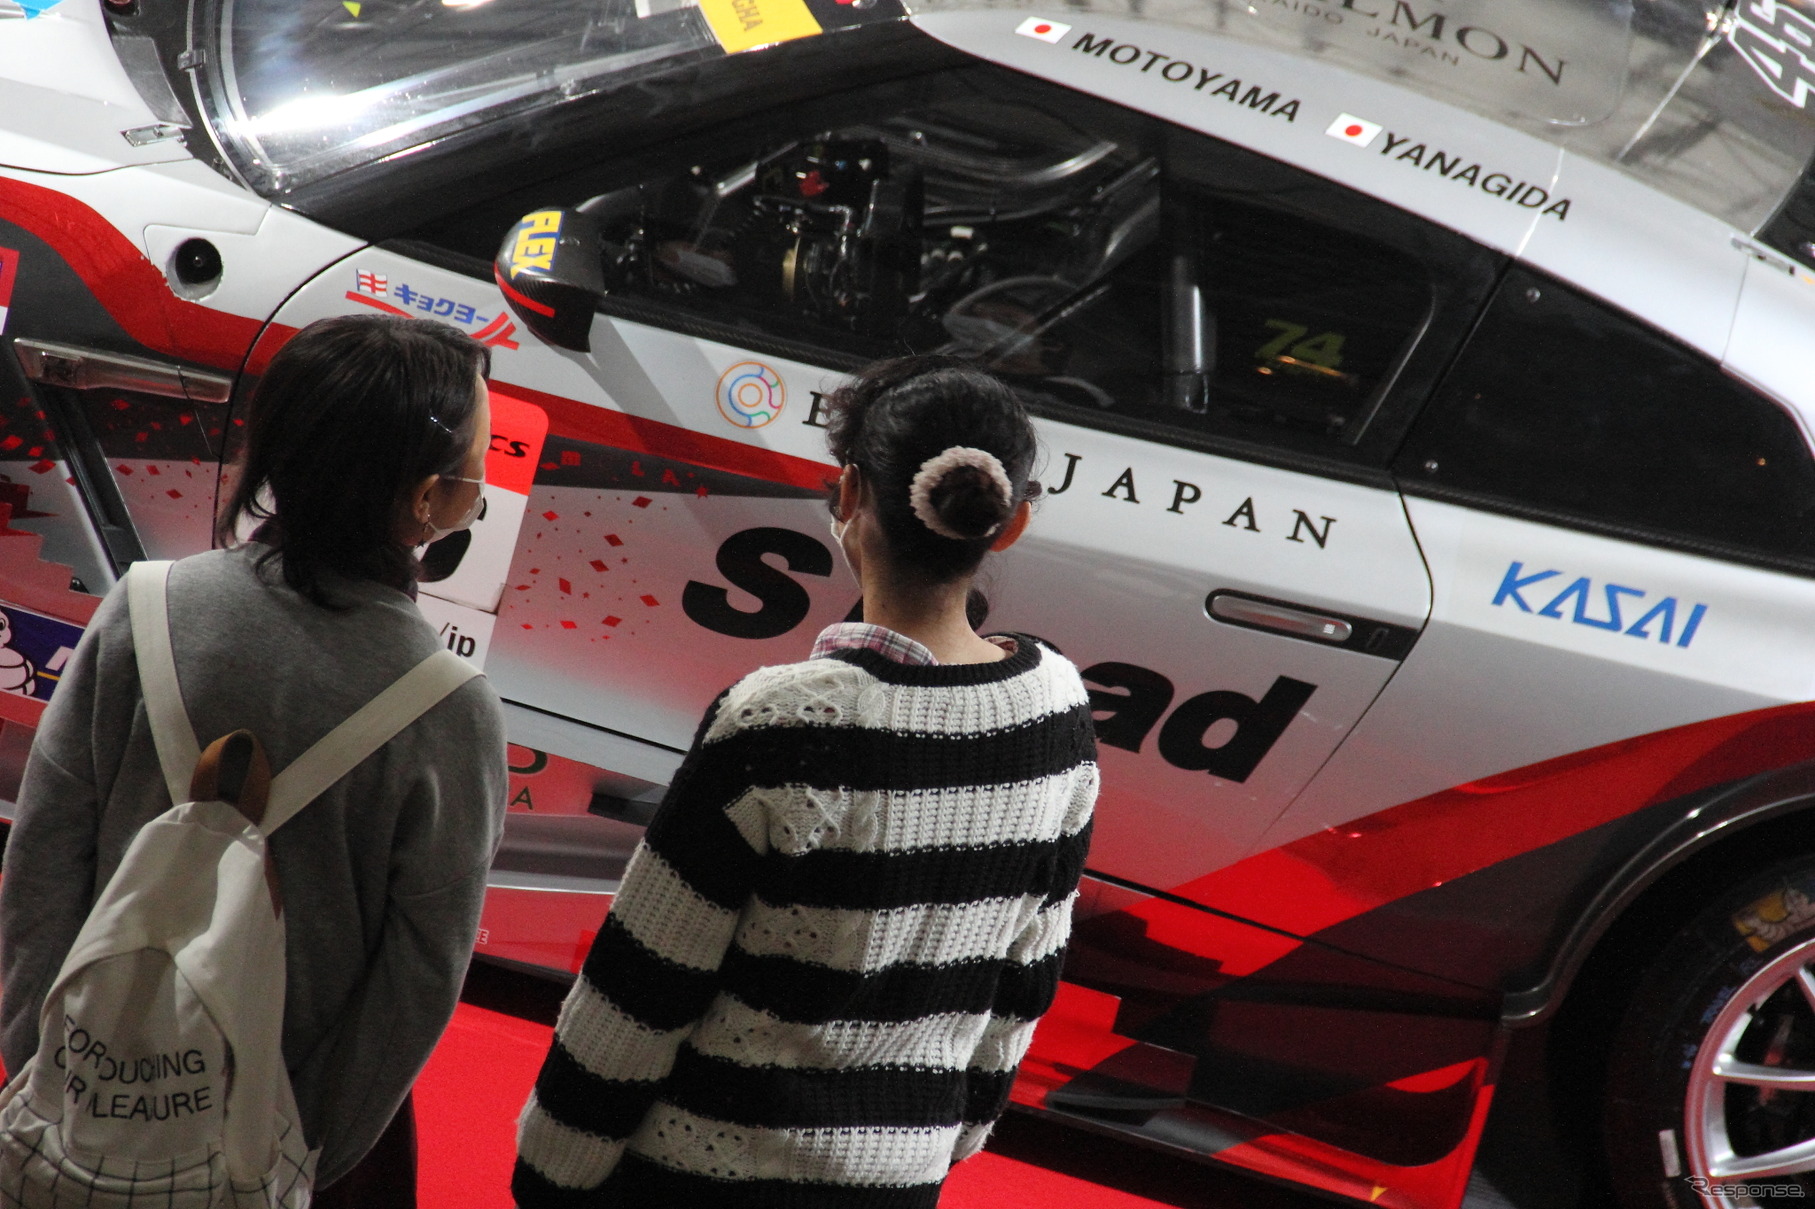 今年も大阪オートメッセでSUPER GTマシンを多数展示